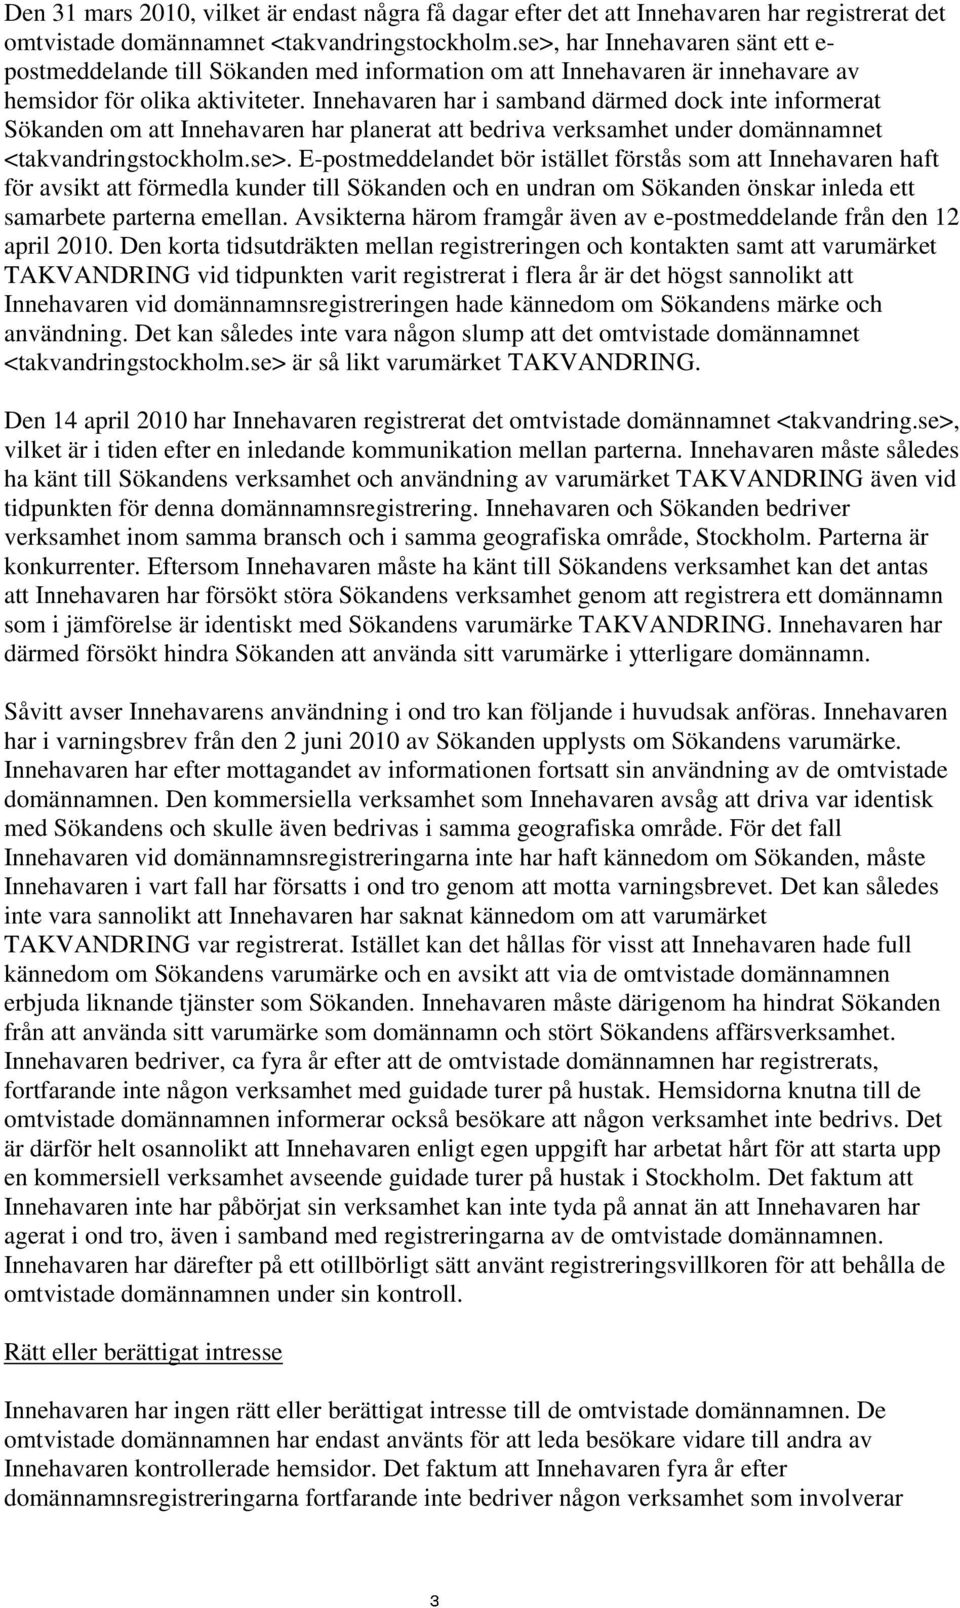 Innehavaren har i samband därmed dock inte informerat Sökanden om att Innehavaren har planerat att bedriva verksamhet under domännamnet <takvandringstockholm.se>.